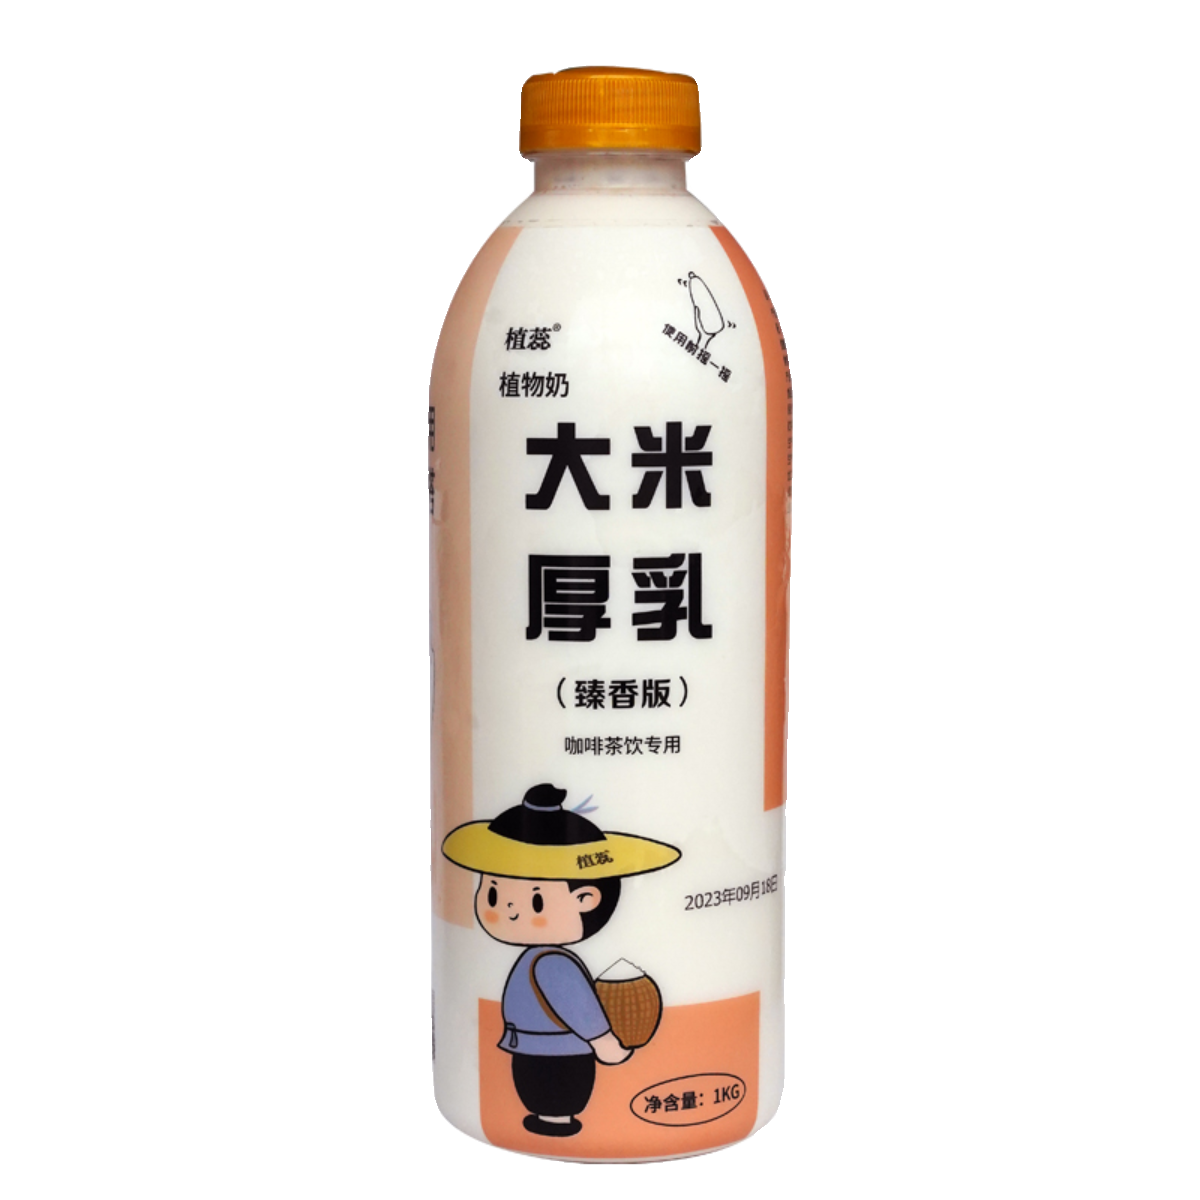 植蕊大米厚乳五常醇香米乳拿铁咖啡店奶茶店专用商用植物奶冷冻1L - 图3